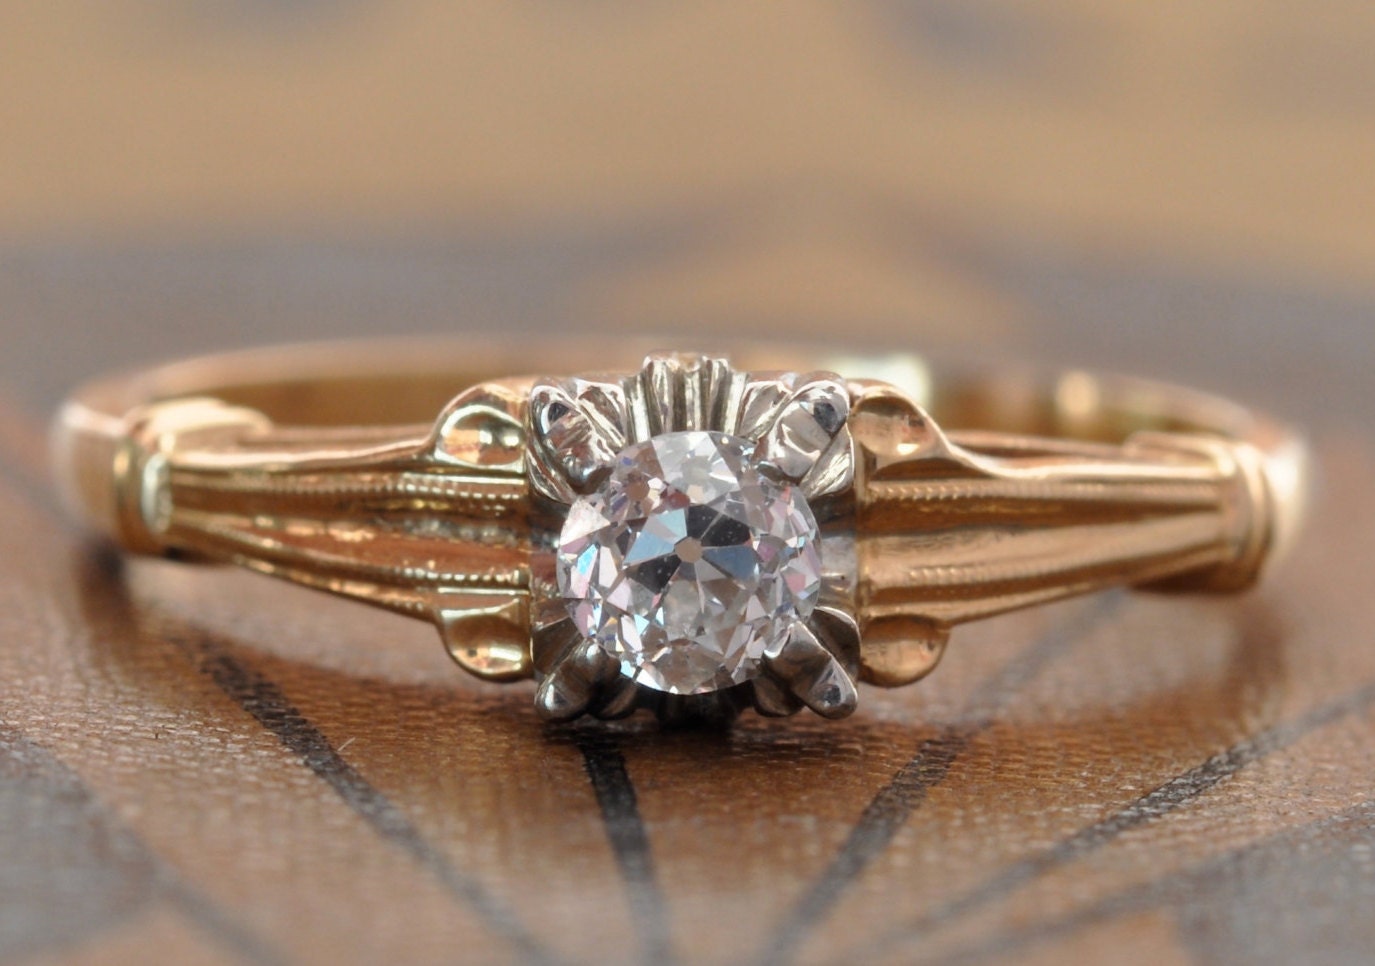 Antique Engagement Ring-1920s Engagement Ring-1930s Engagement